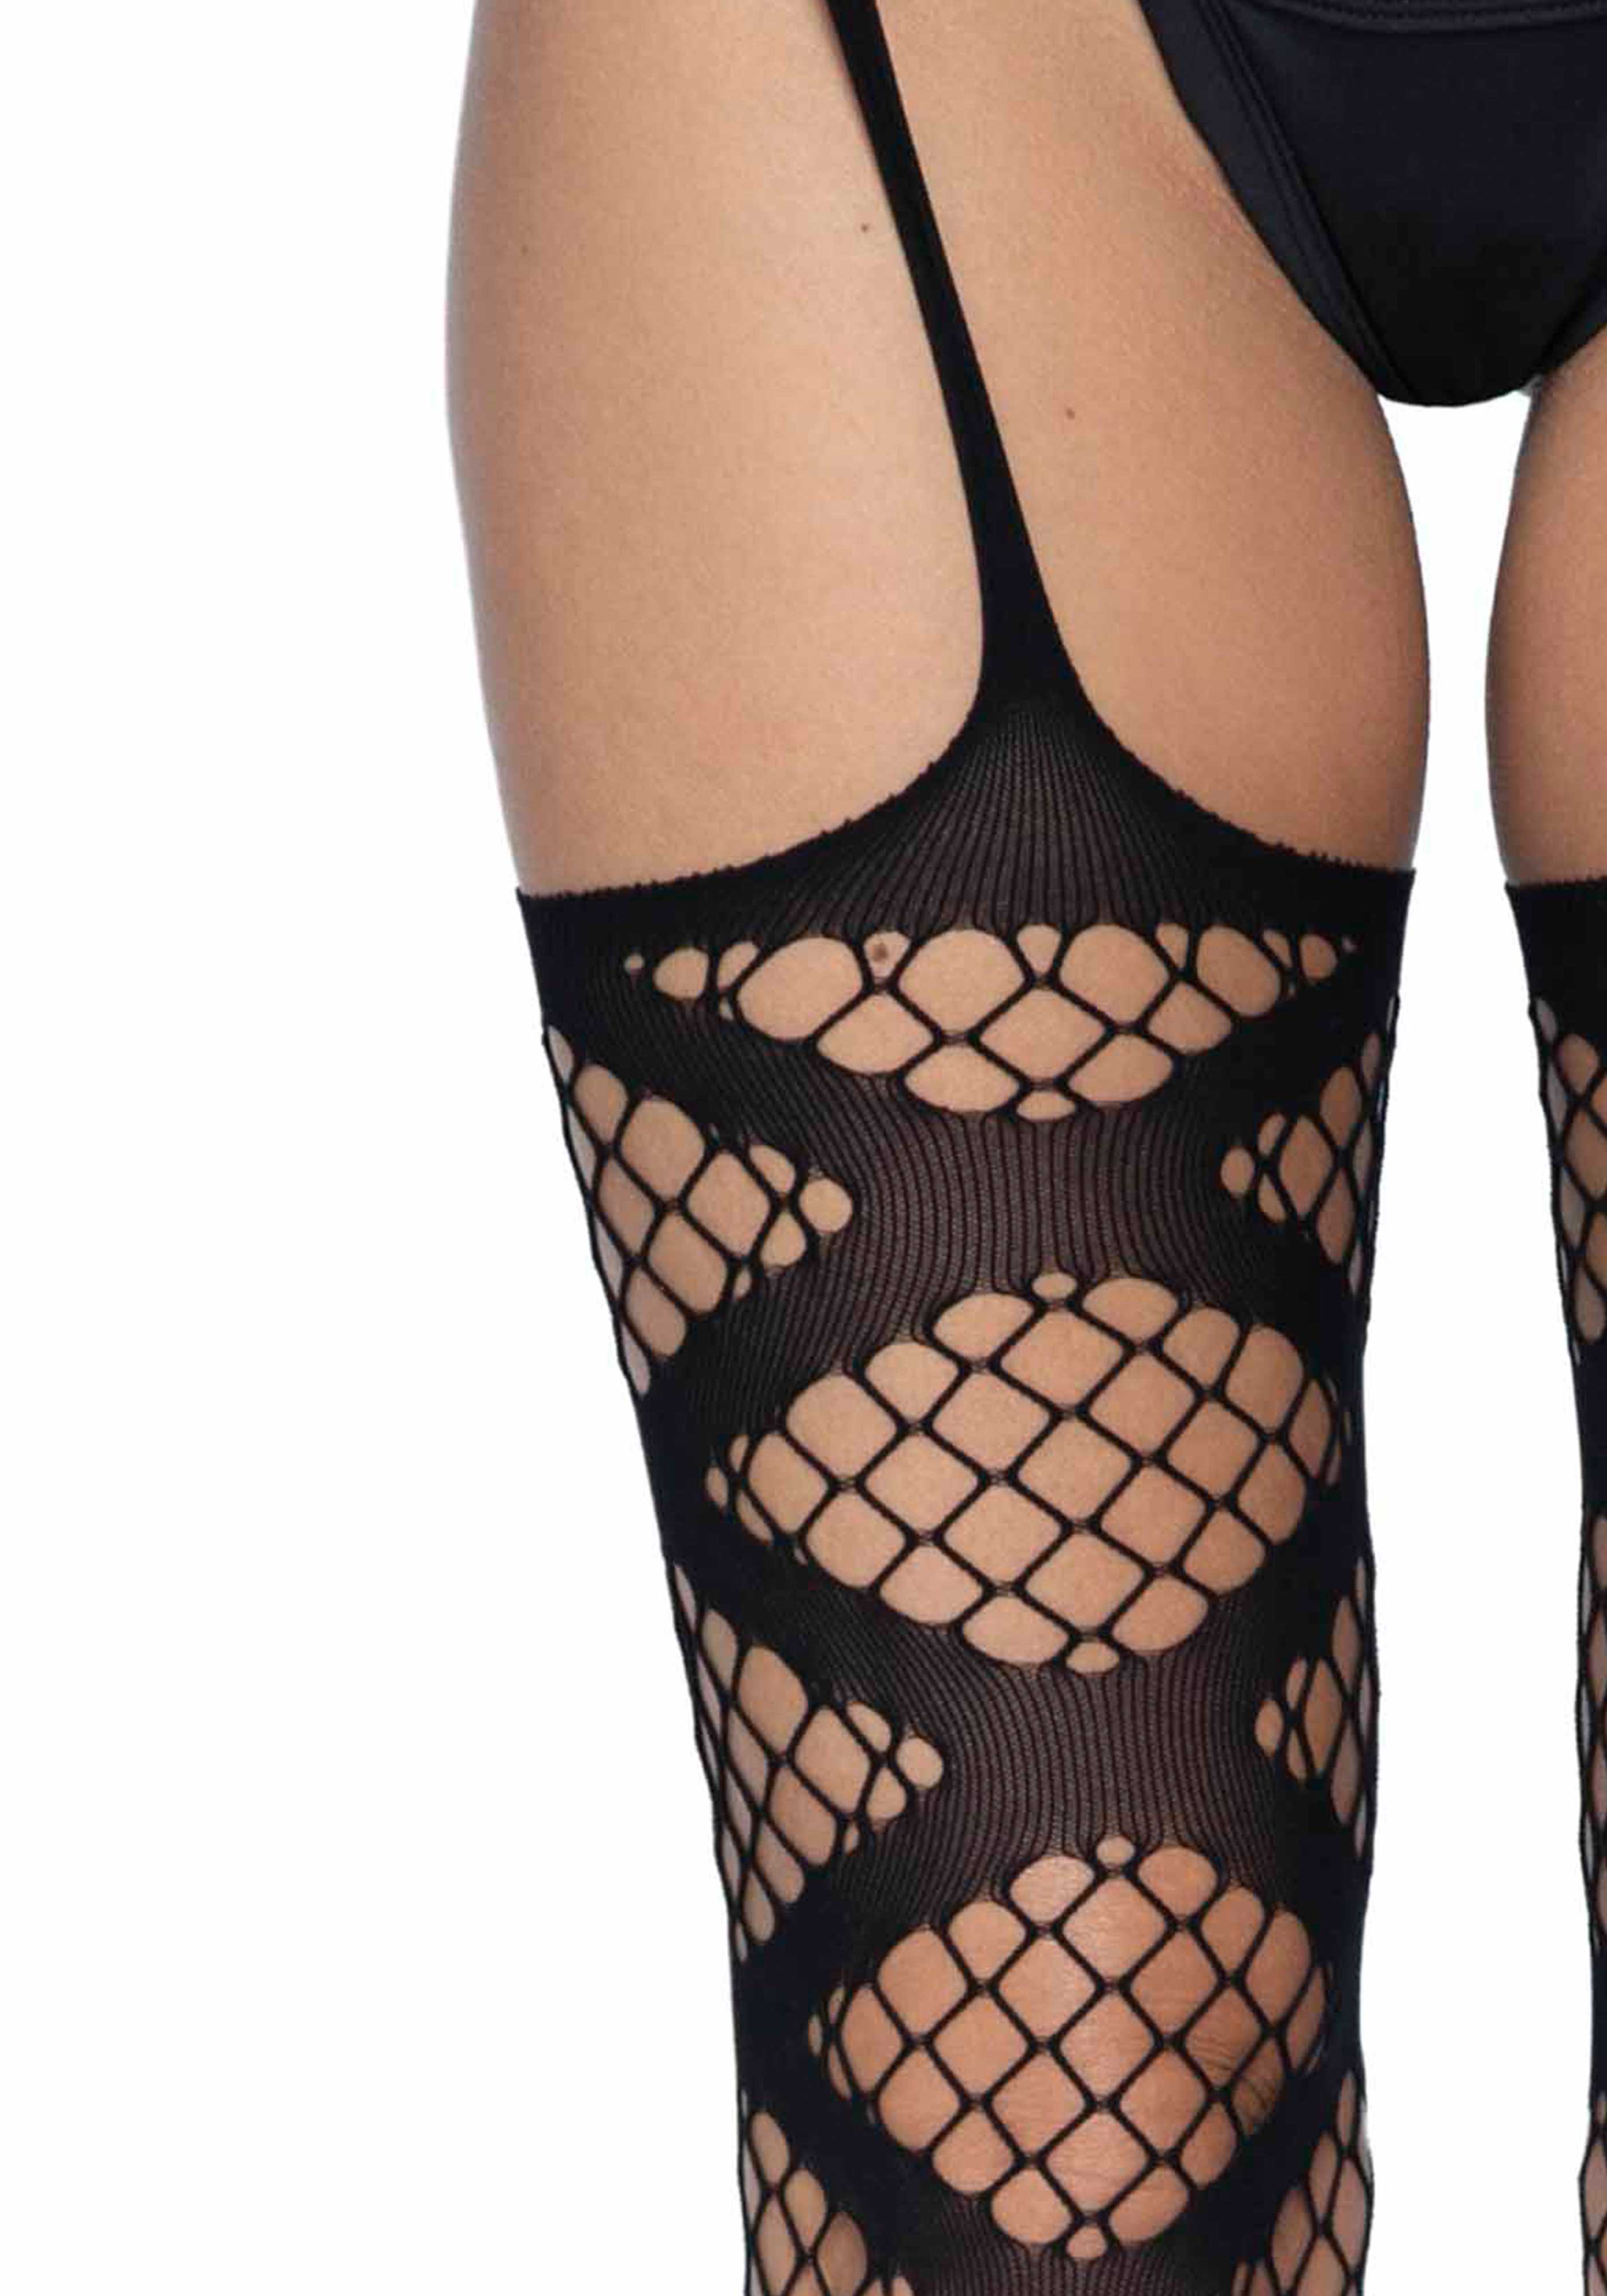 Leg Avenue 1954 Net garter belt stockings